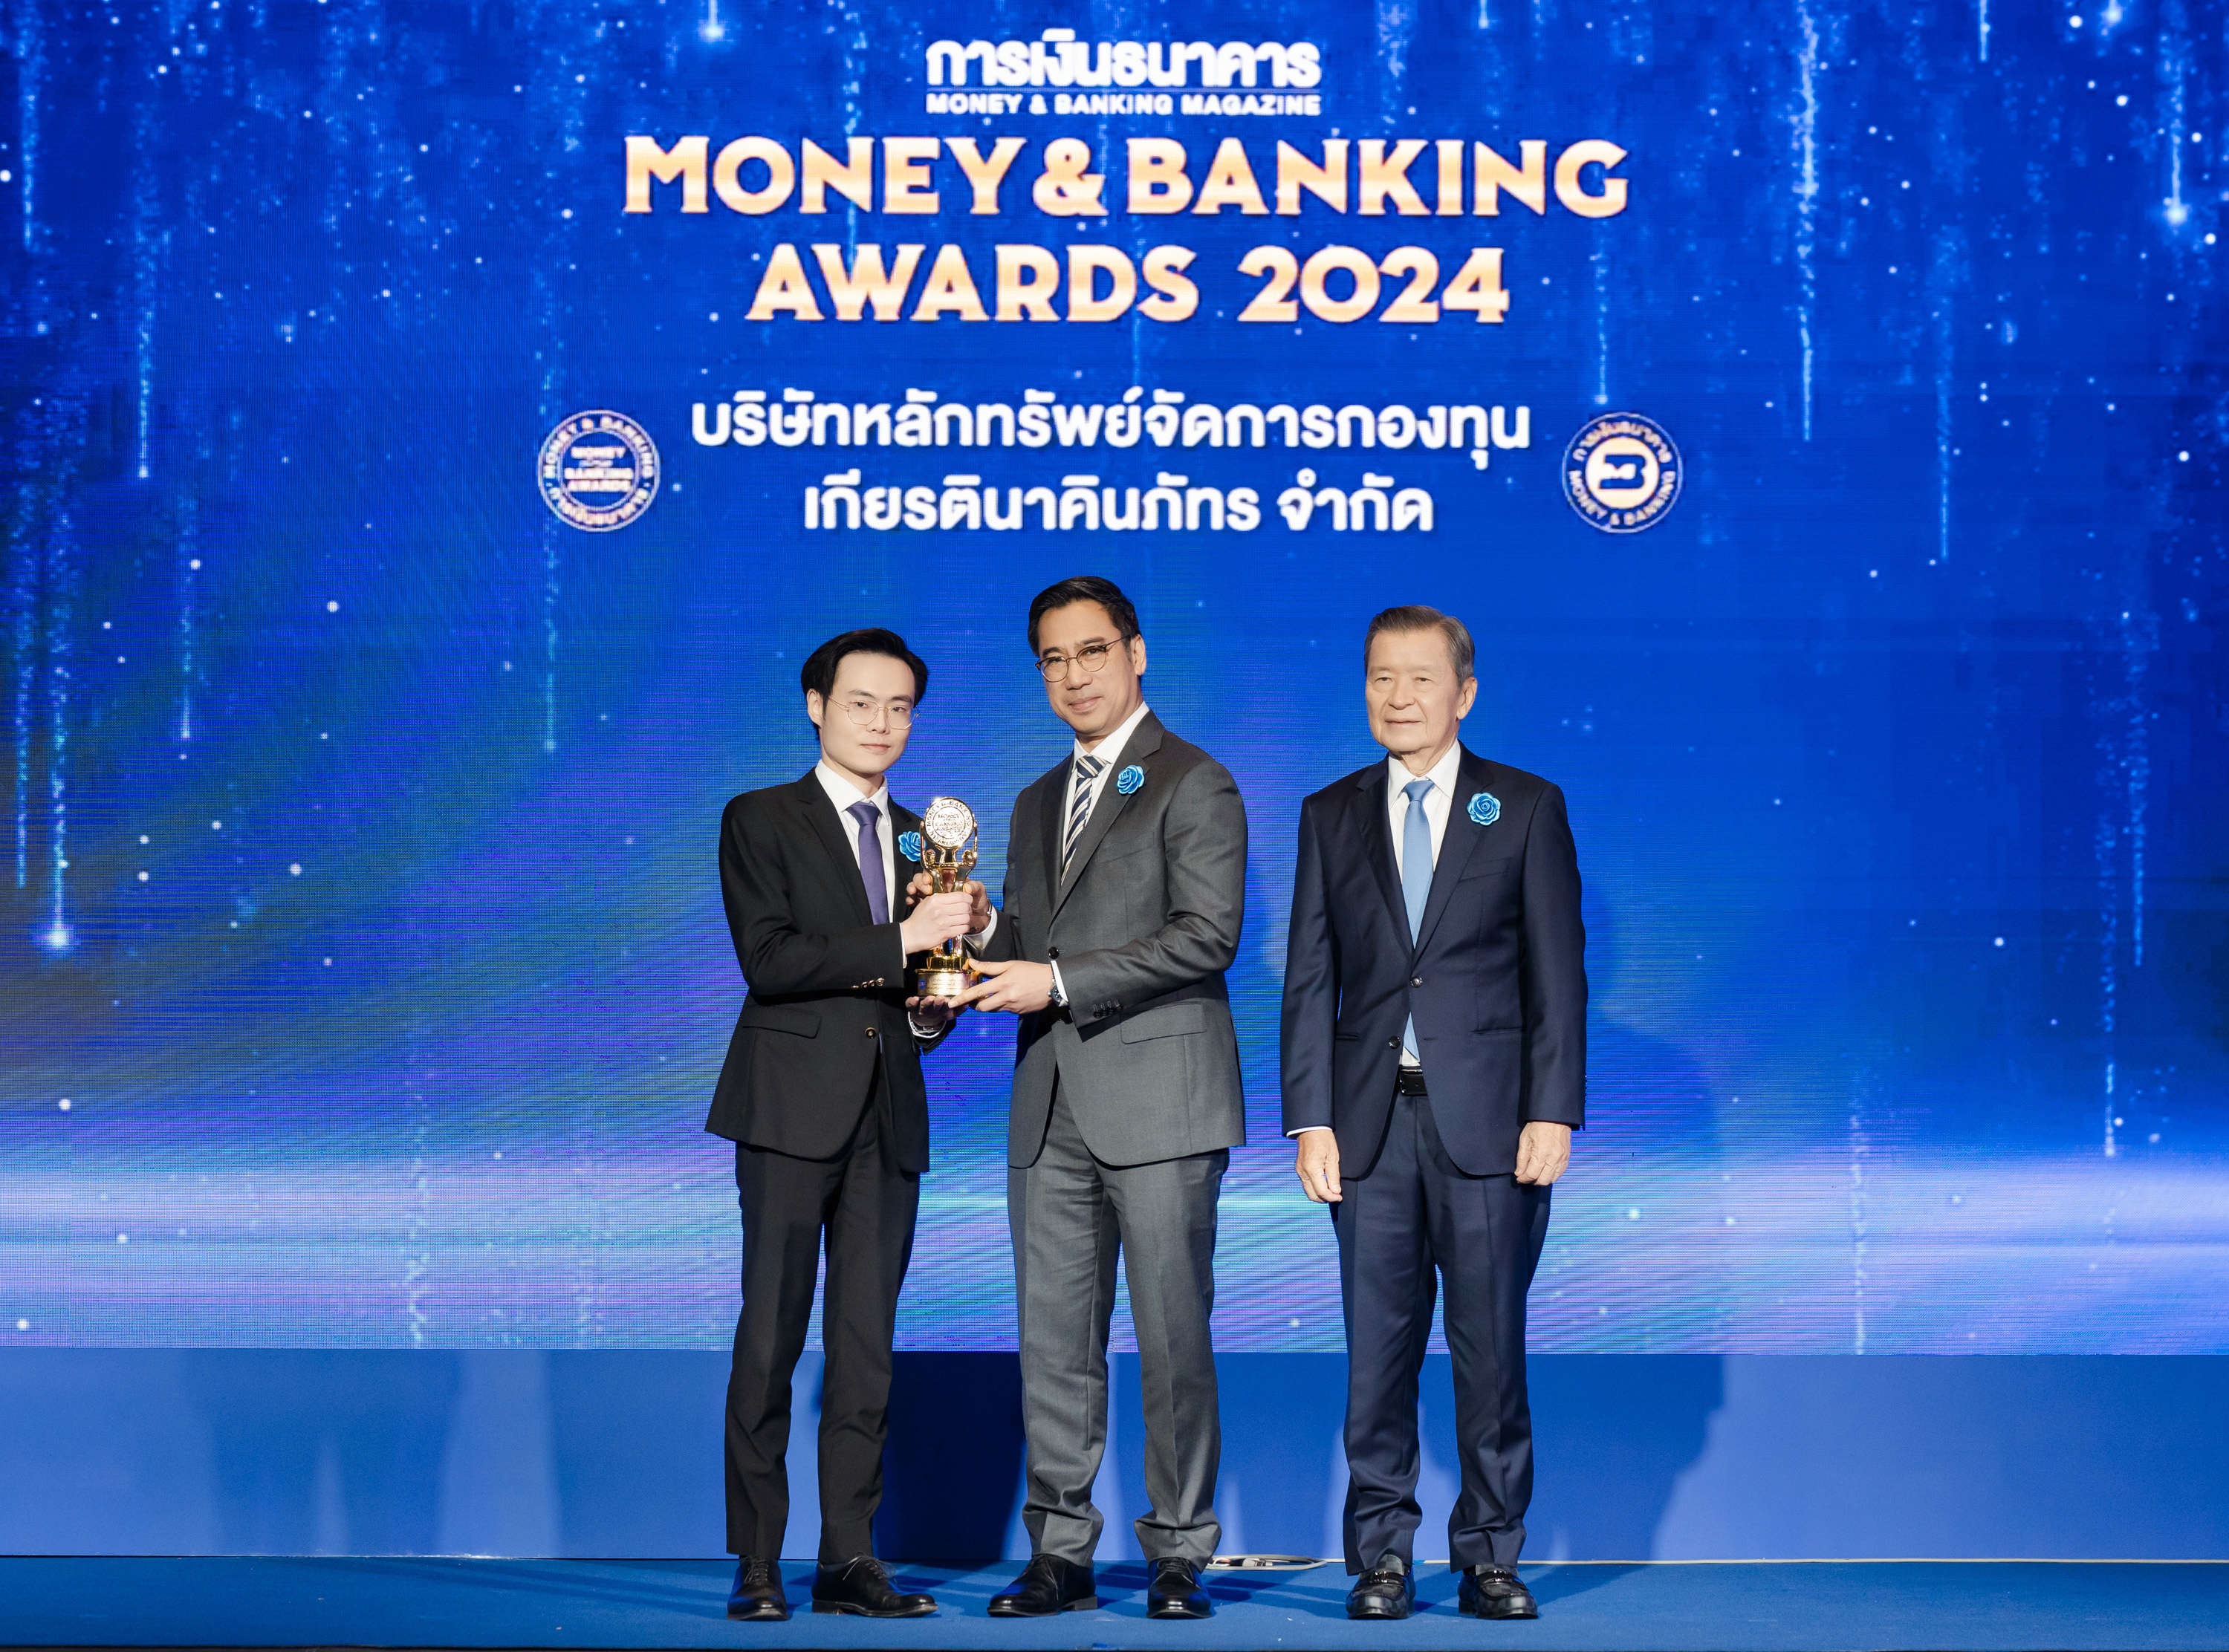 บลจ.เกียรตินาคินภัทร คว้า 2 รางวัลกองทุนยอดเยี่ยมแห่งปี  จากเวที Money & Banking Awards 2024 